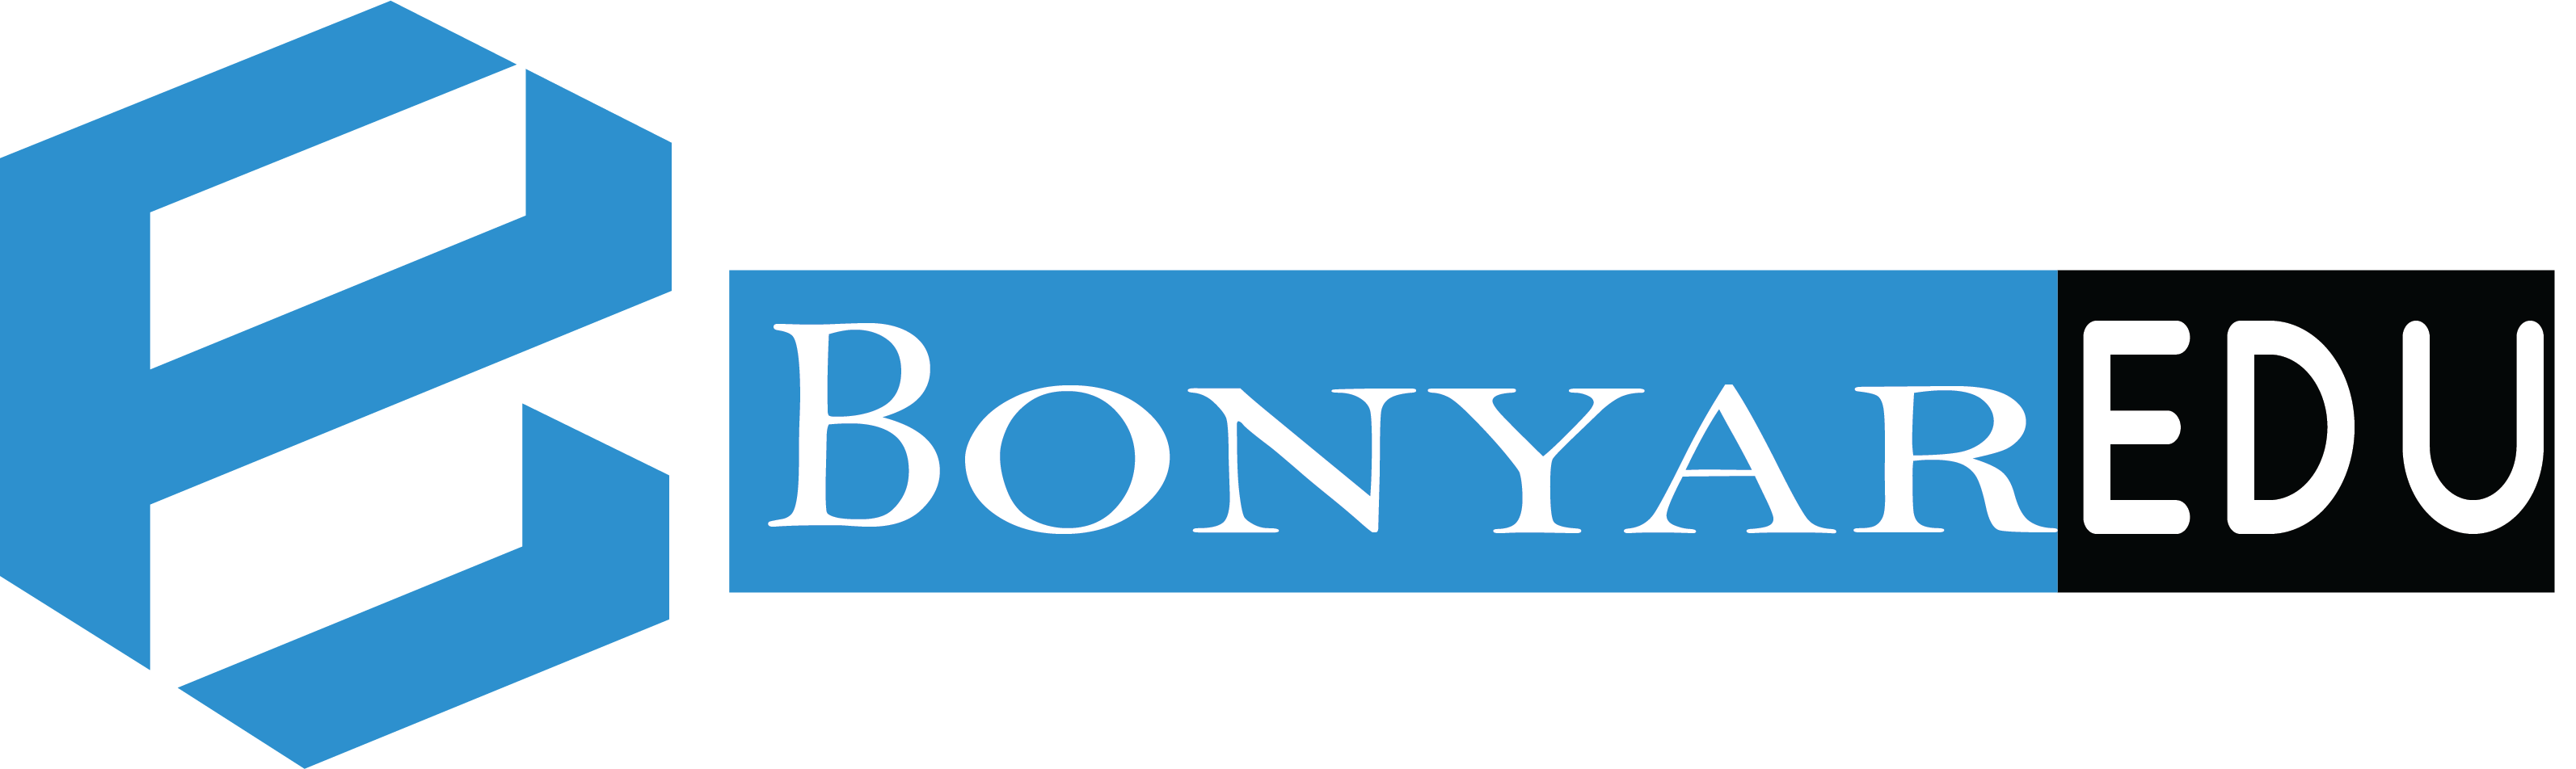 Bonyaredu